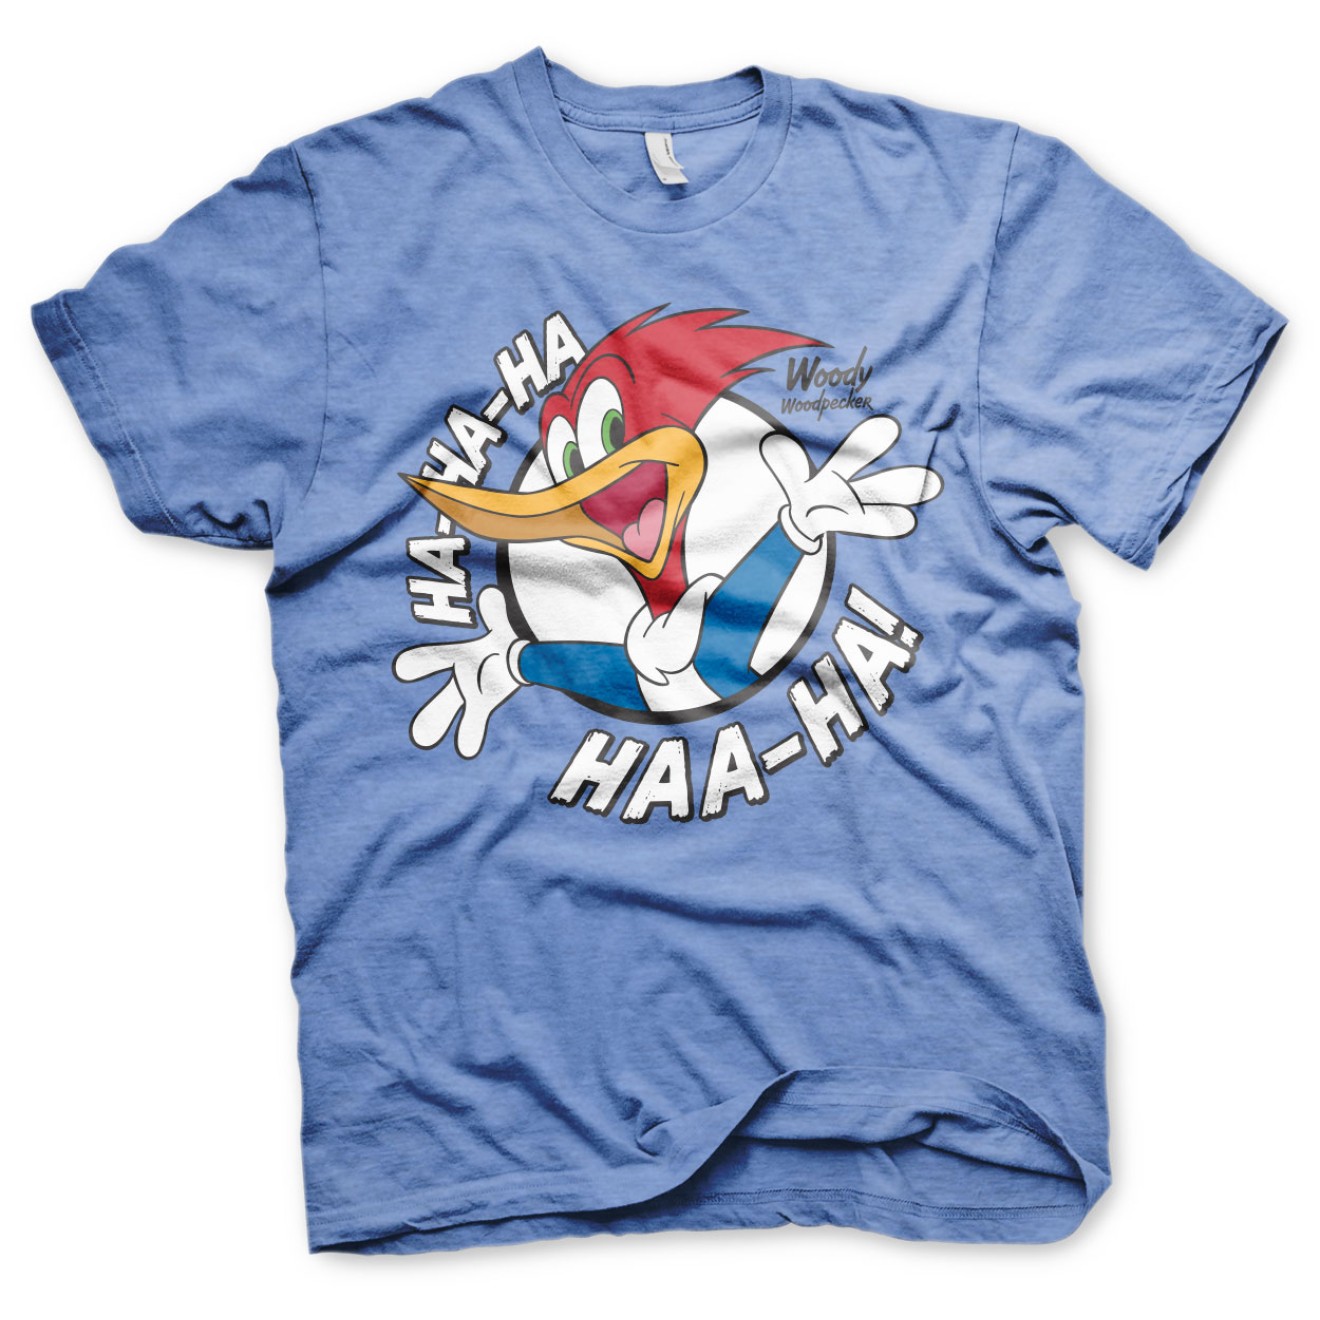 Woody Woodpecker Ha-Ha-Ha Haa-Ha T-Shirt Tee